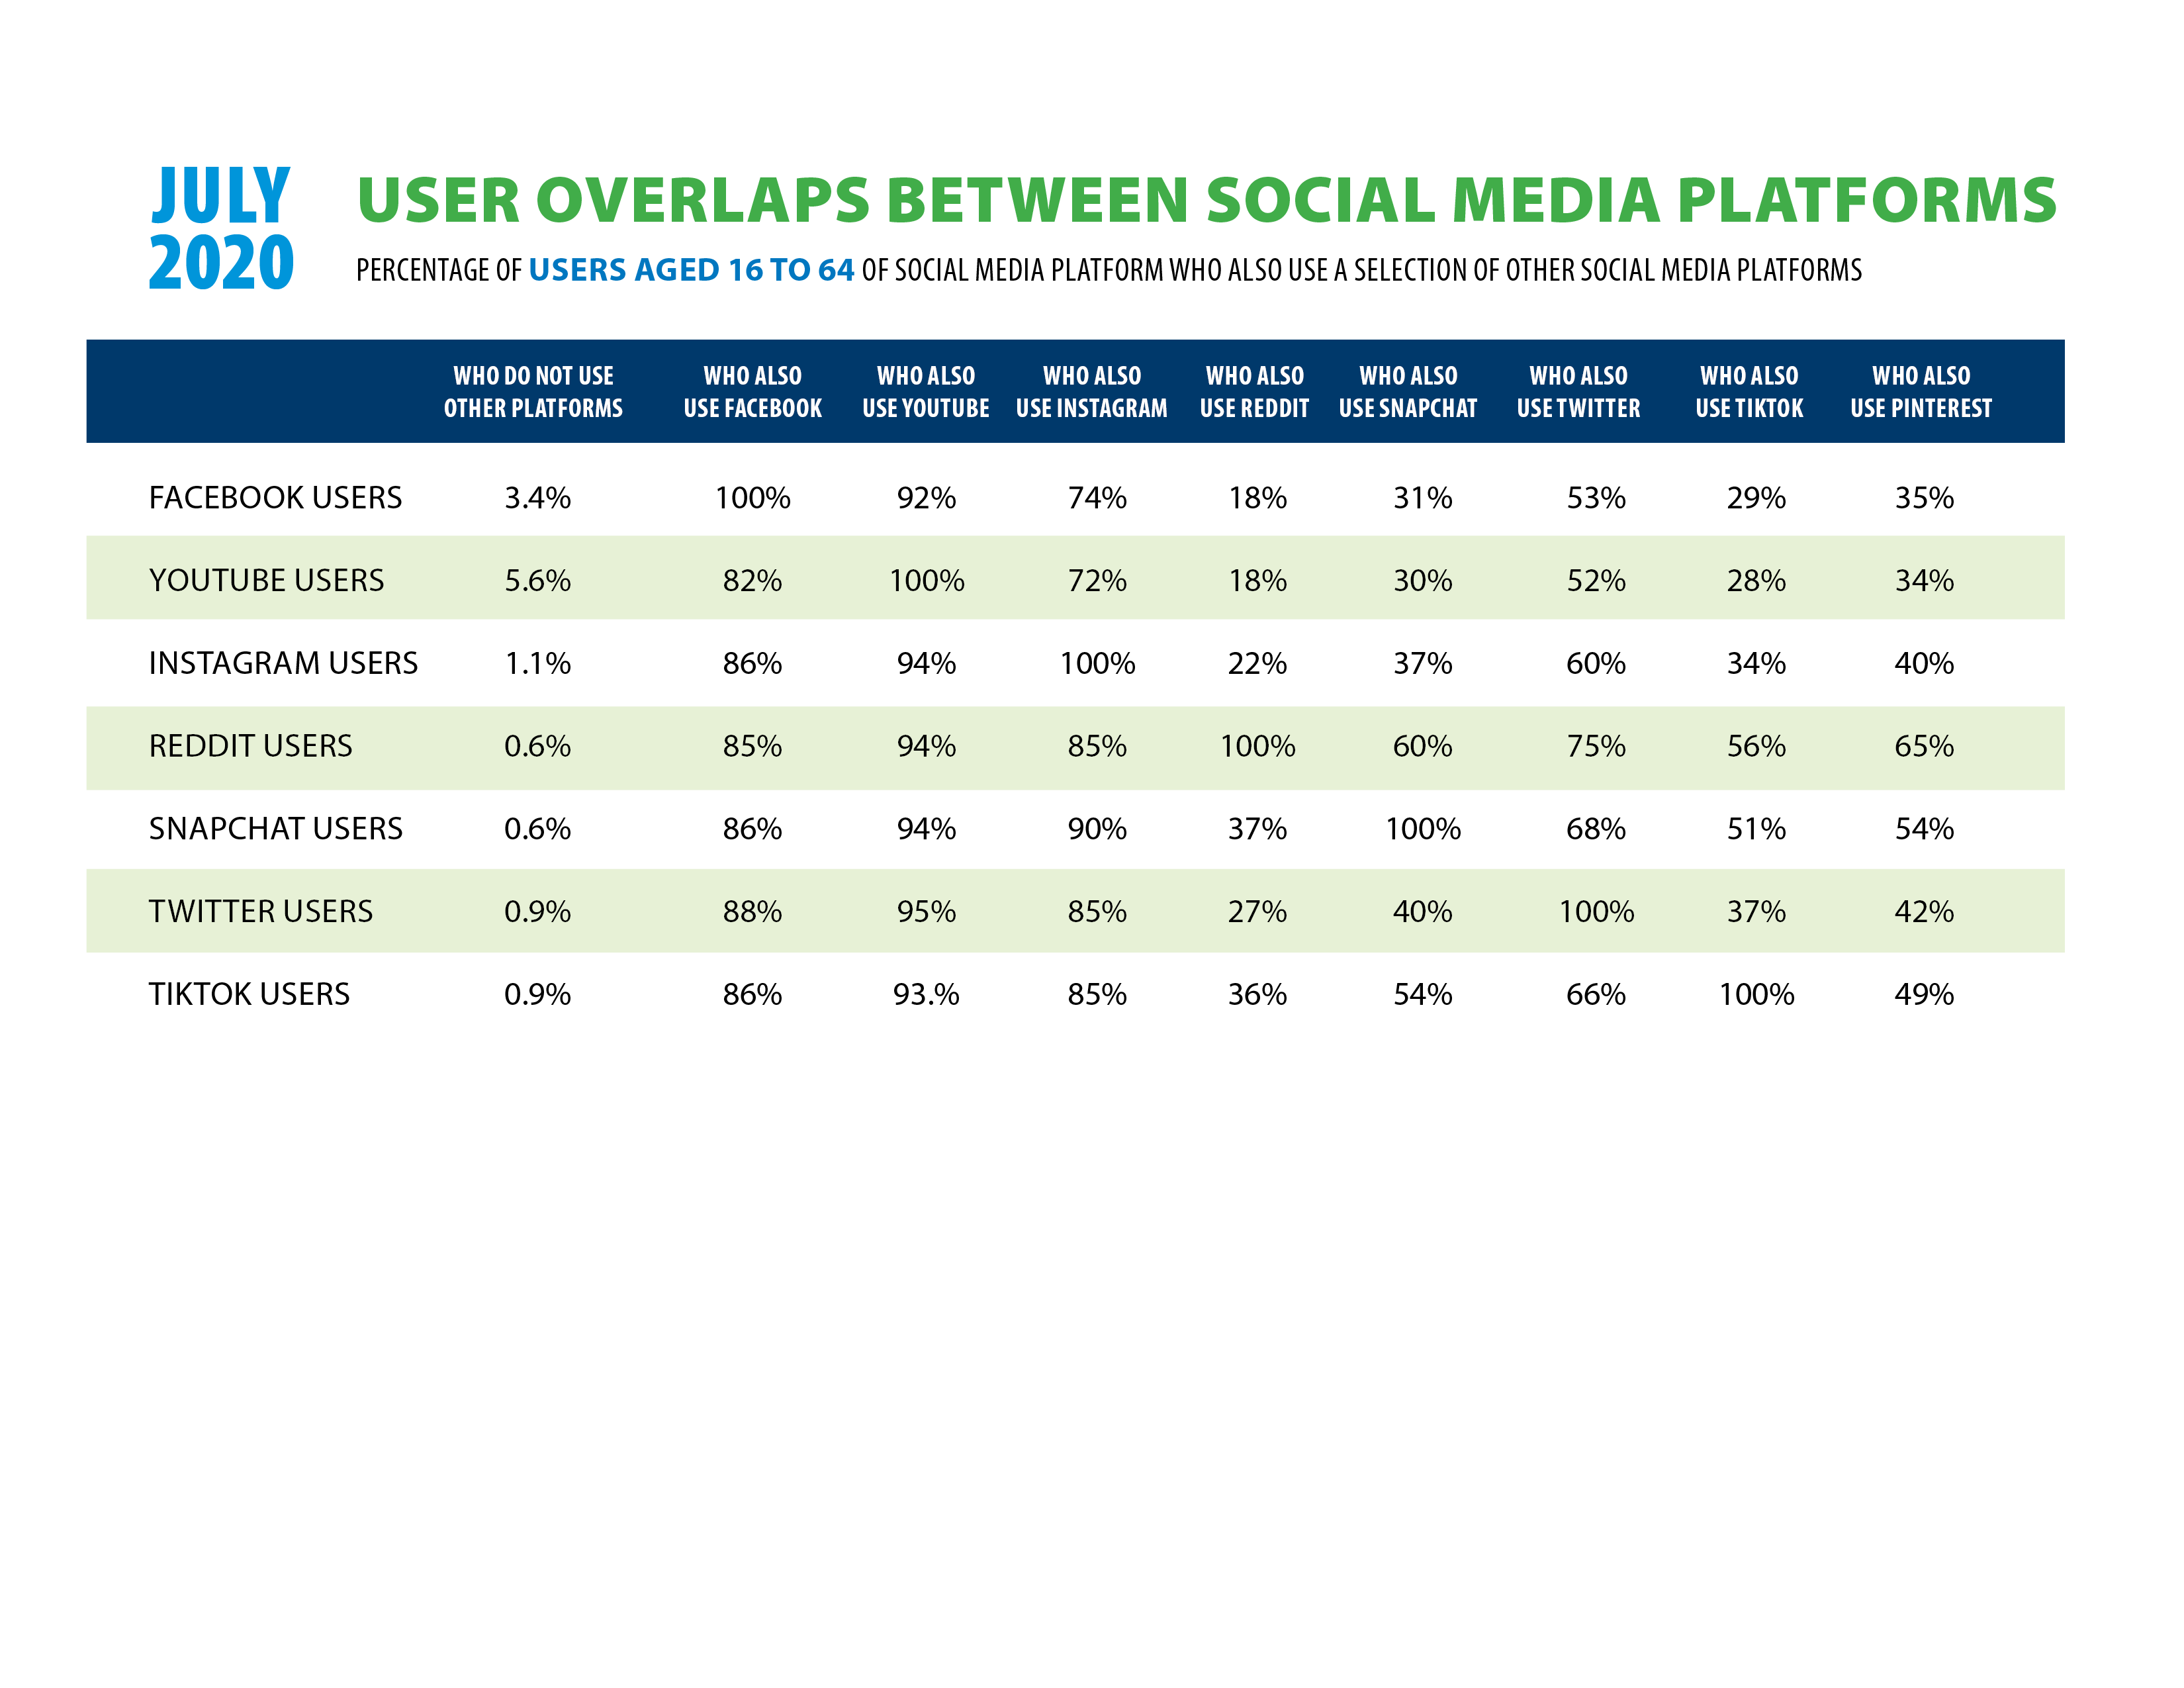 Social Media Platform Usage Overlaps